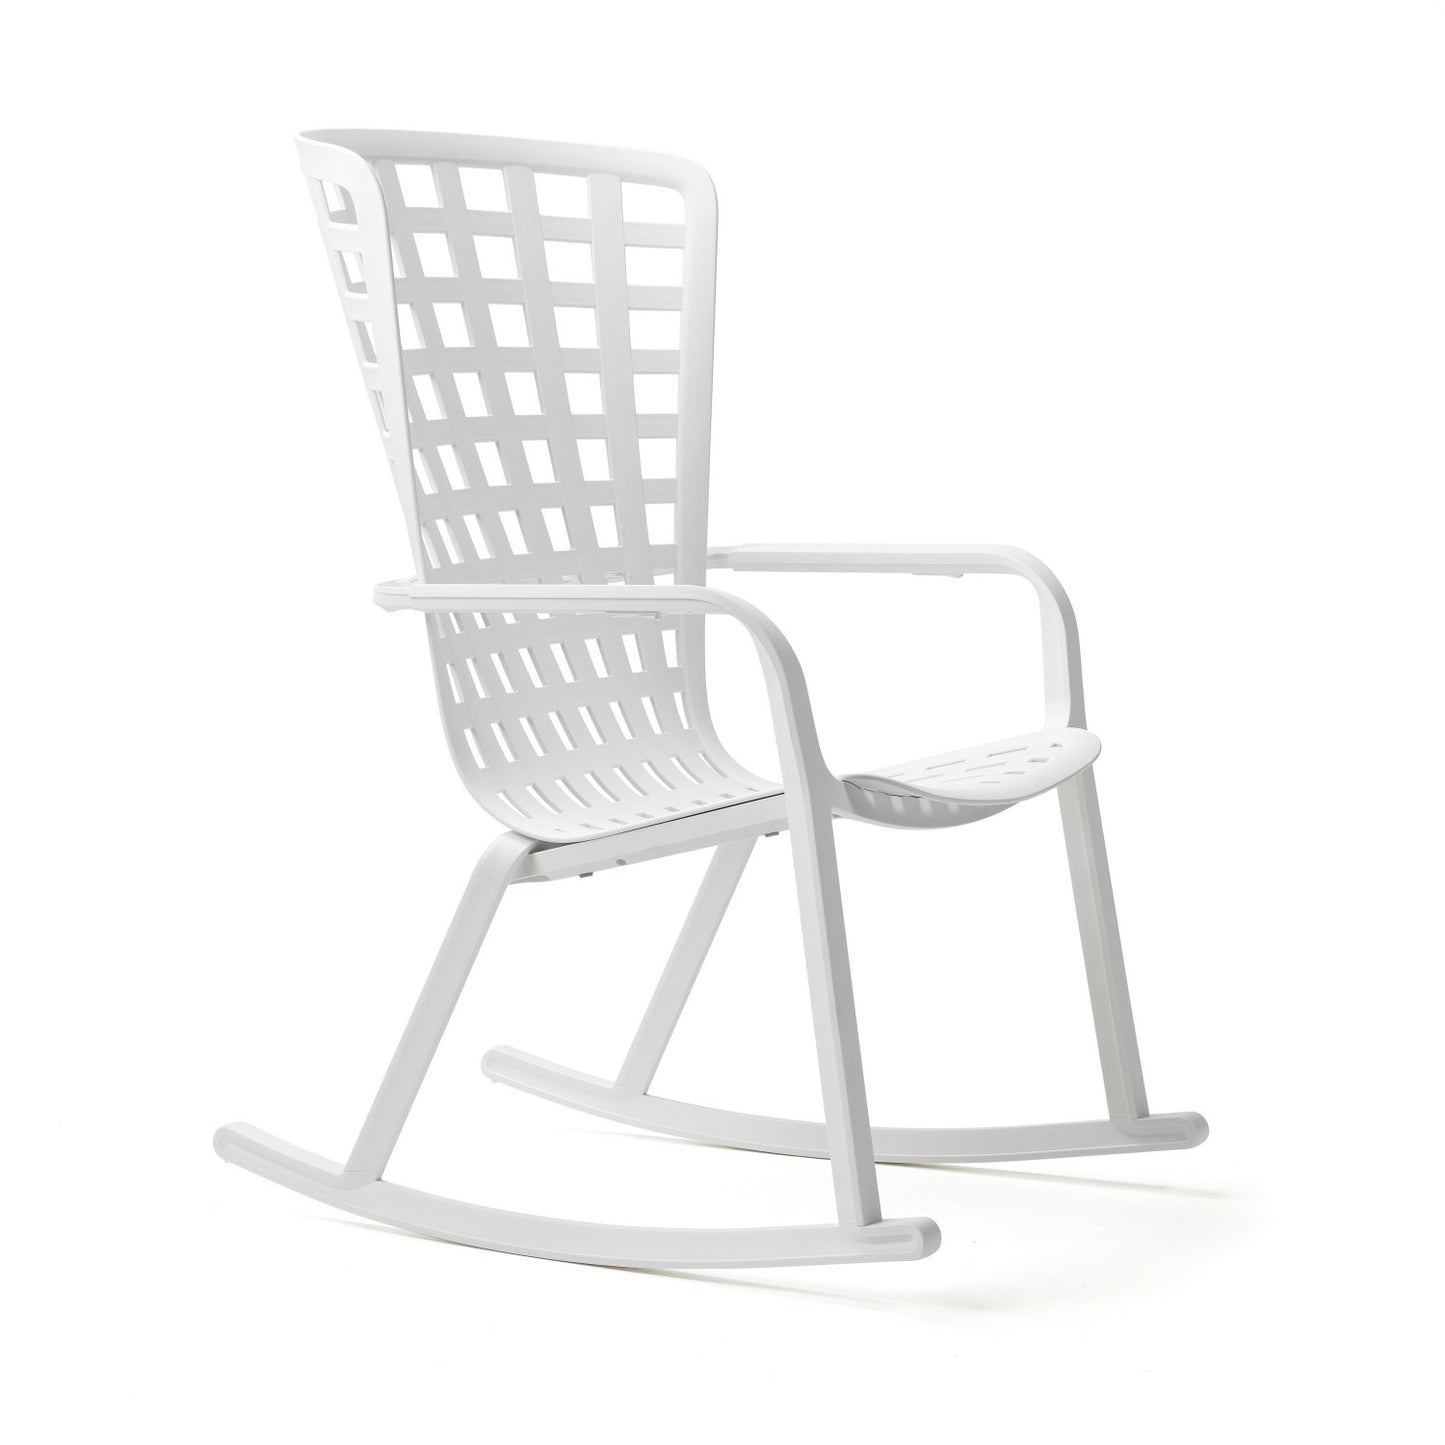 Folio Outdoor Rocking Chair